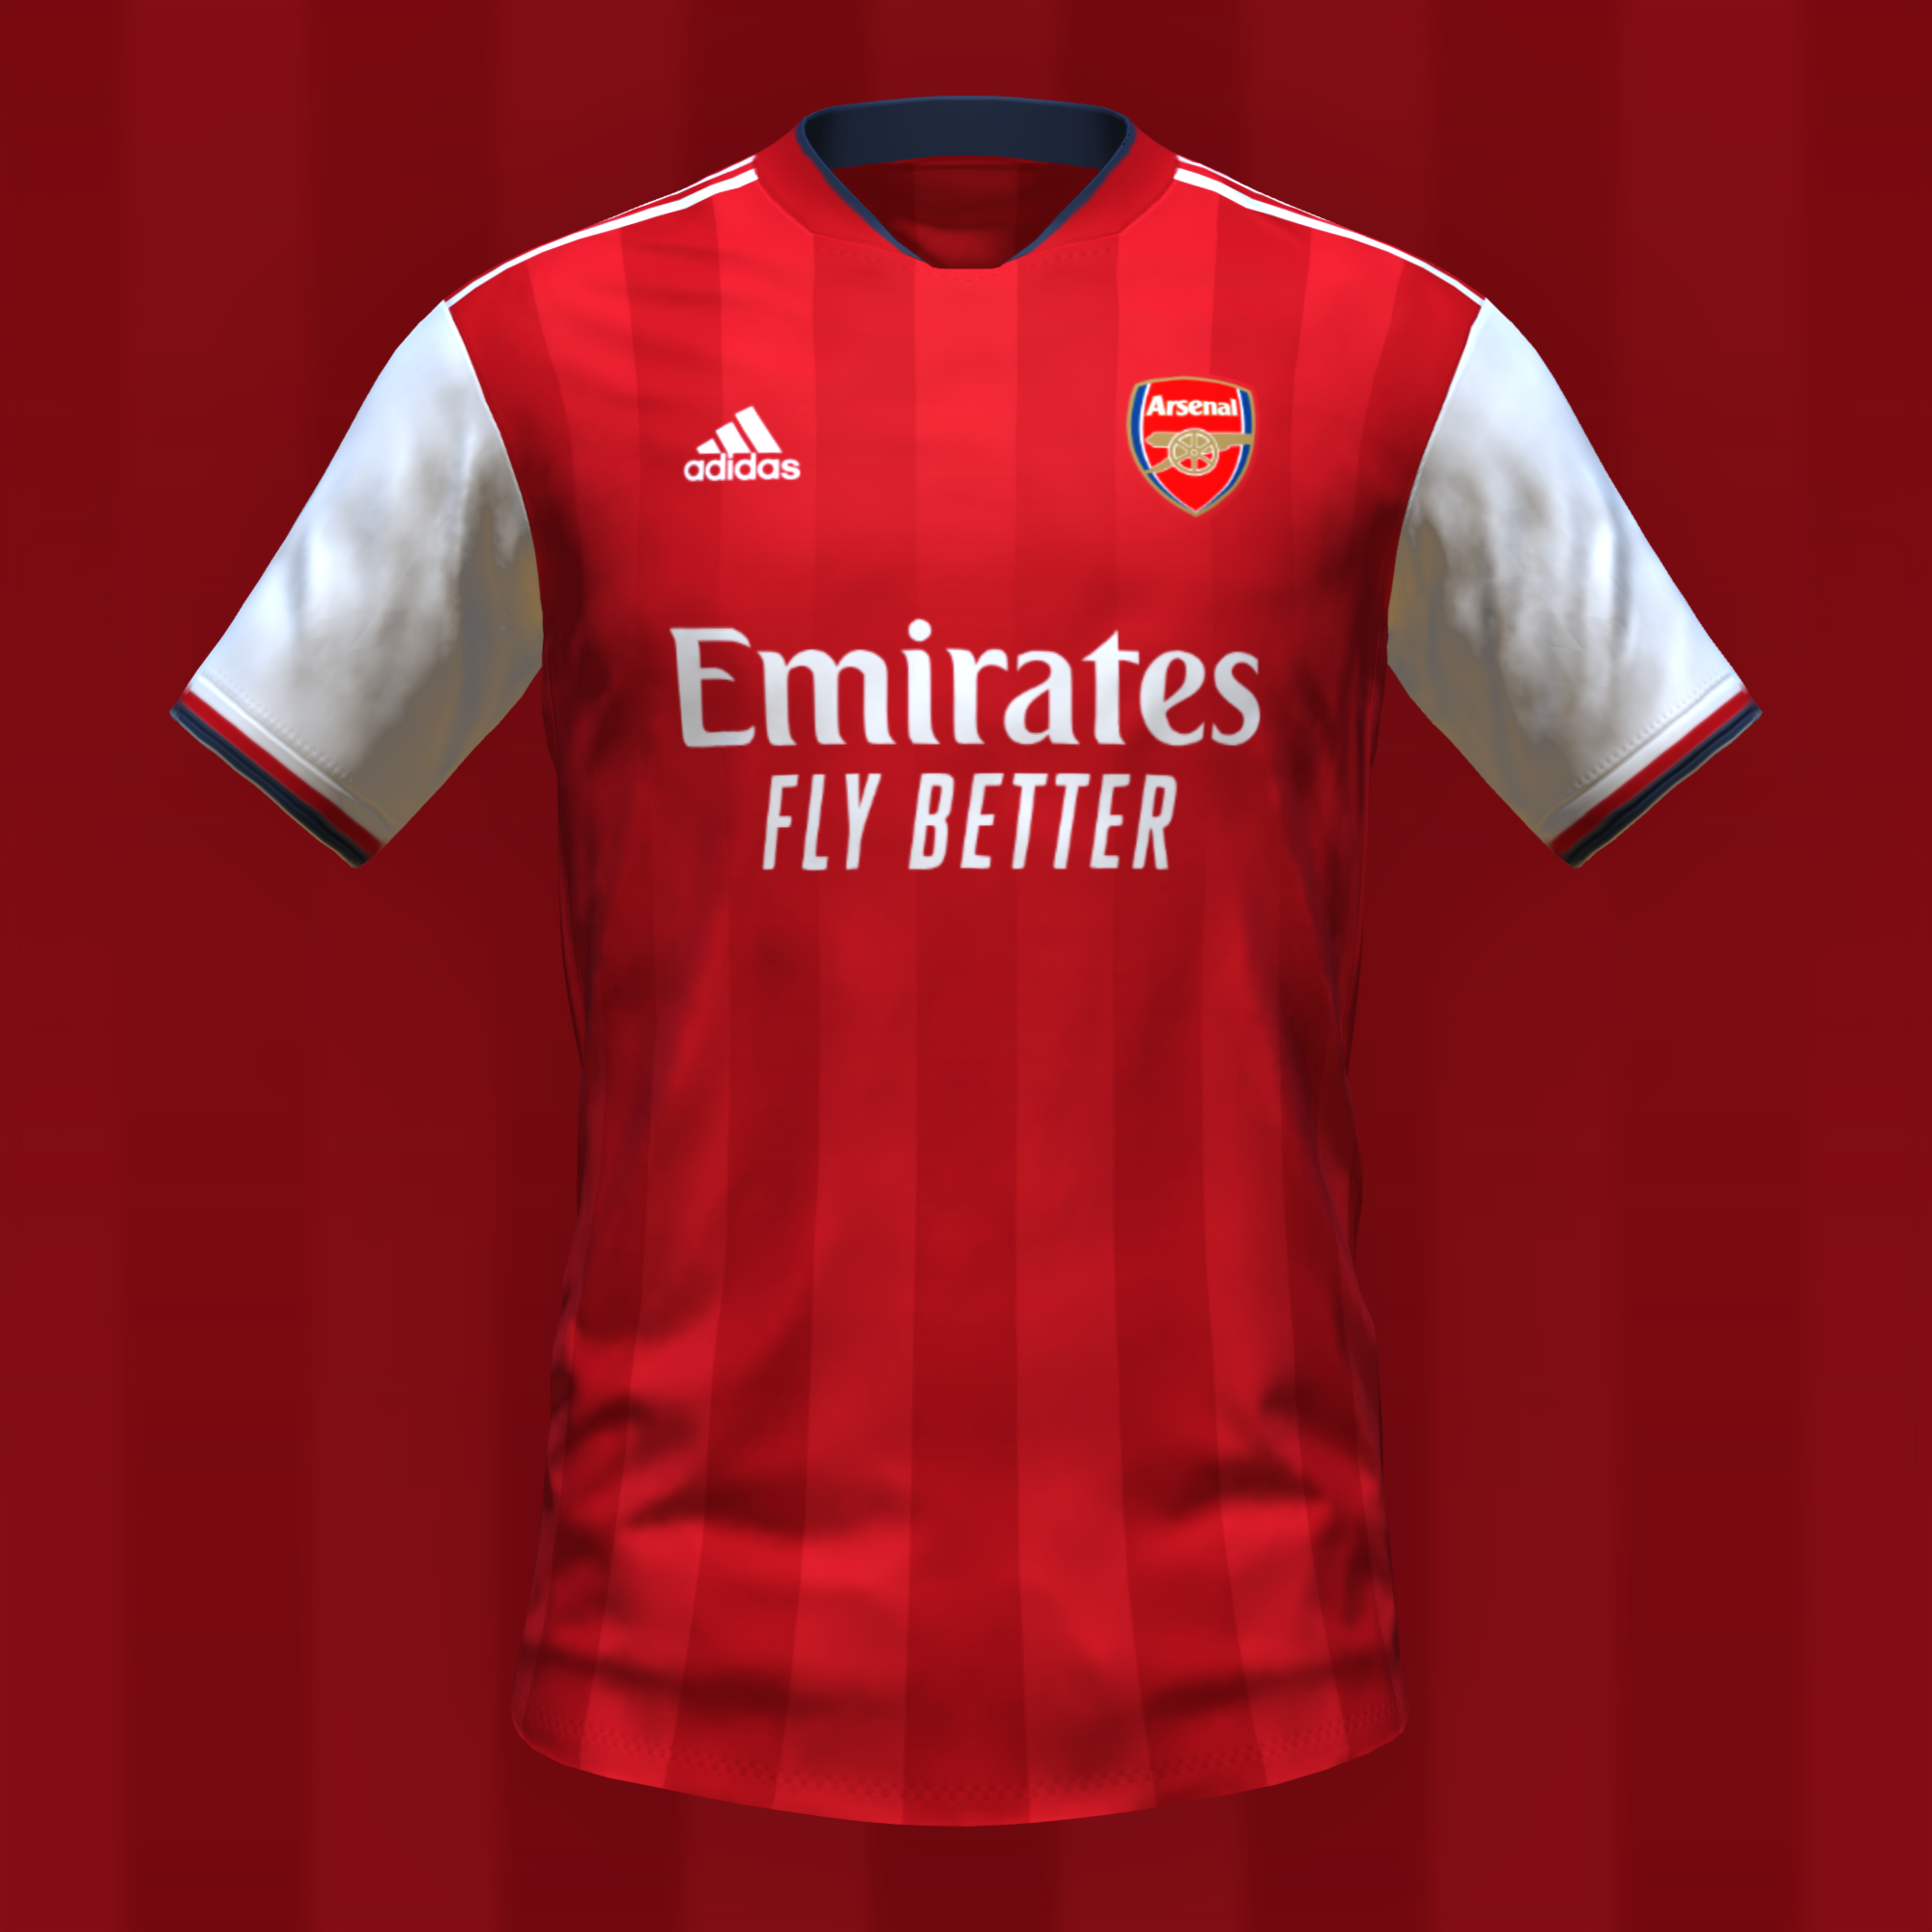 Arsenal home kit by feliplayzz